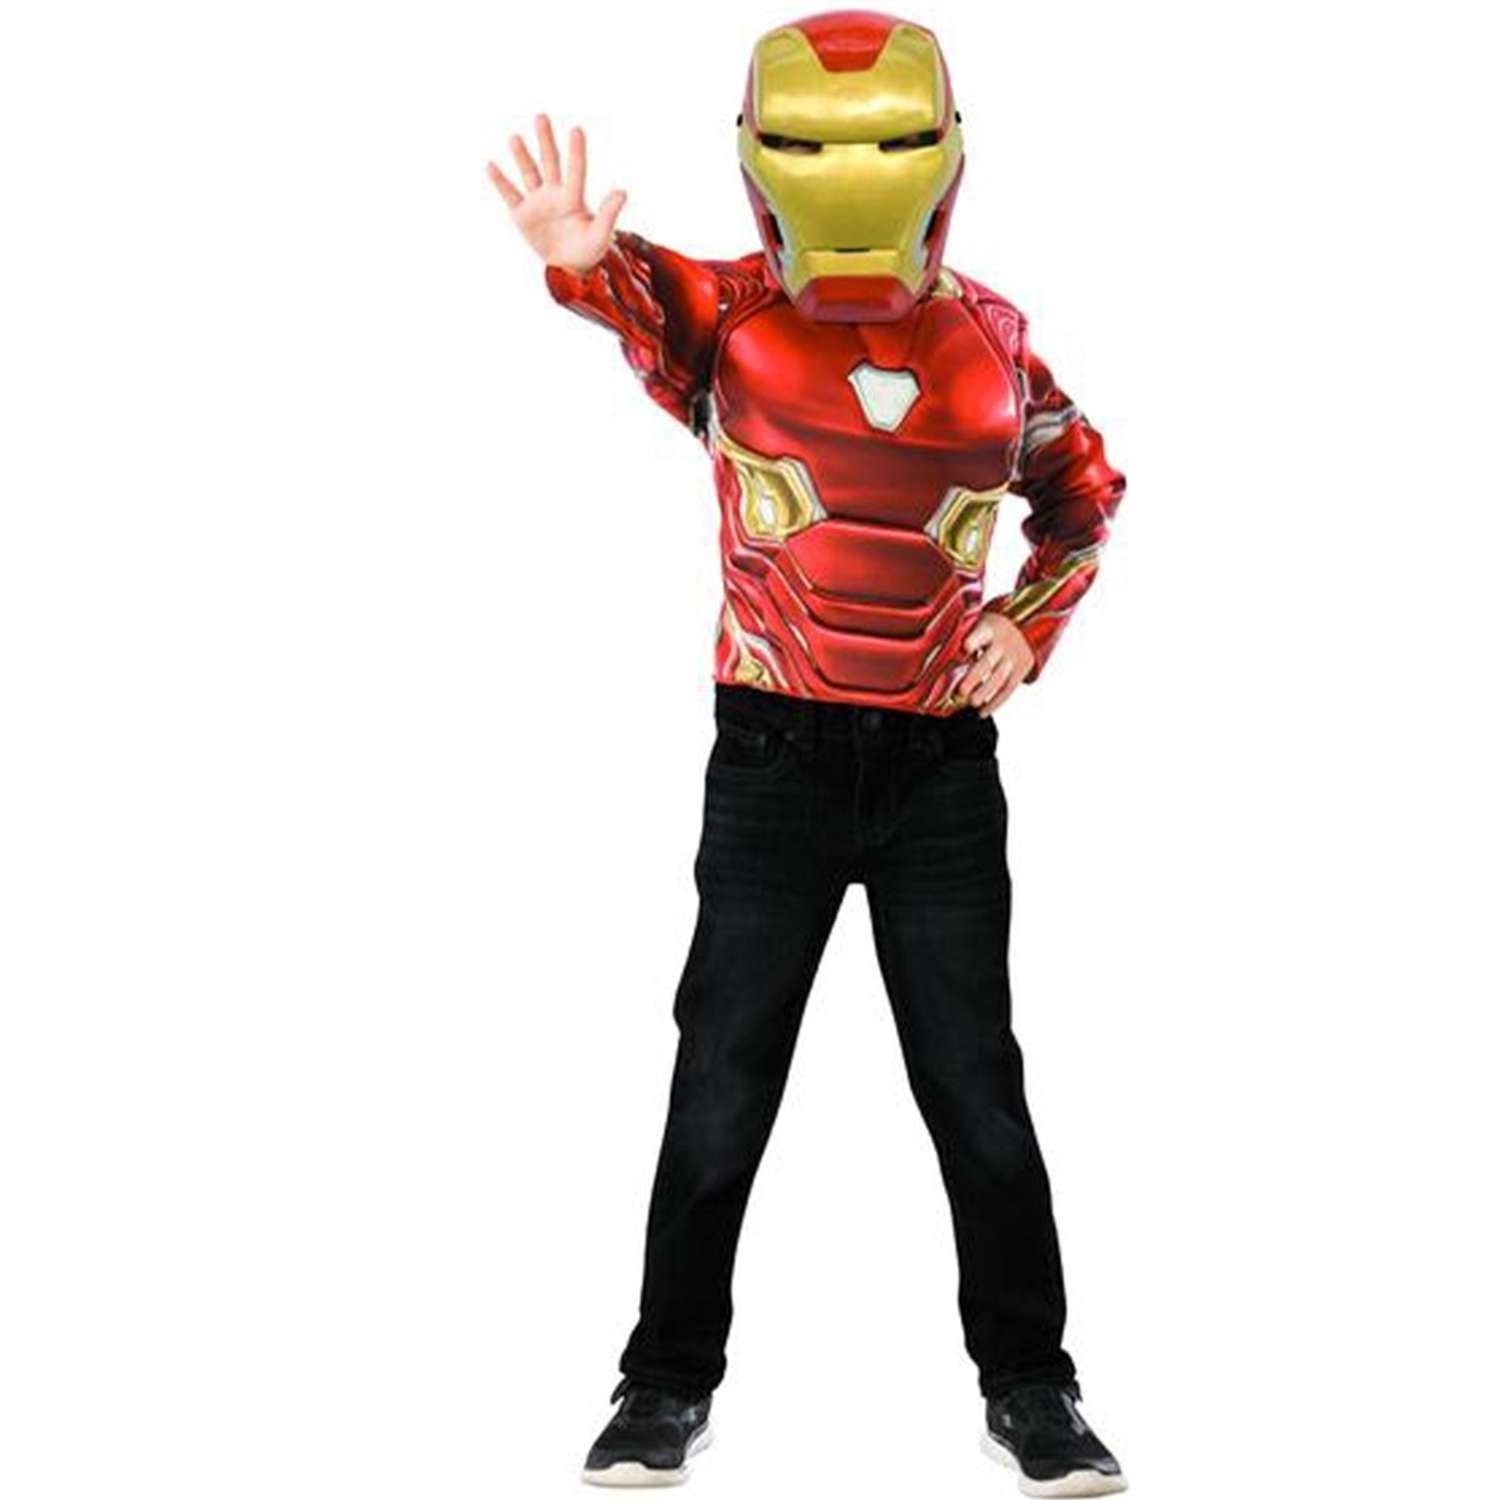 Детский костюм железного человека. Костюм маска. Rubies костюмы железного человека. Карнавальный костюм Rubie's Железный человек Deluxe. Красный костюм и маска